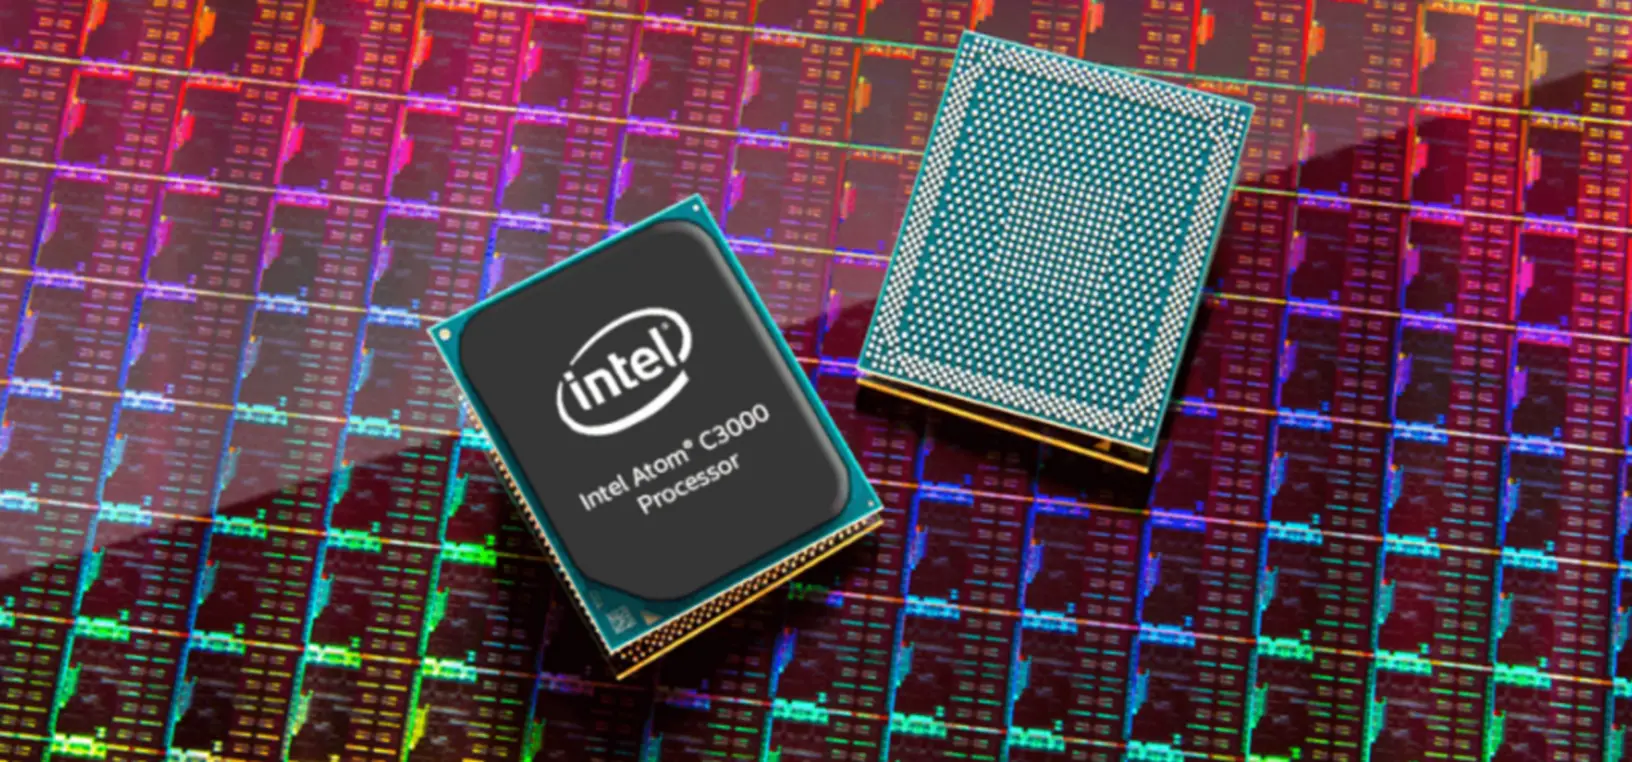 Интел е. Intel Atom c3000. Процессор Интел атом. Процессор Intel Atom z3736f. Процессор Intel Atom inside.